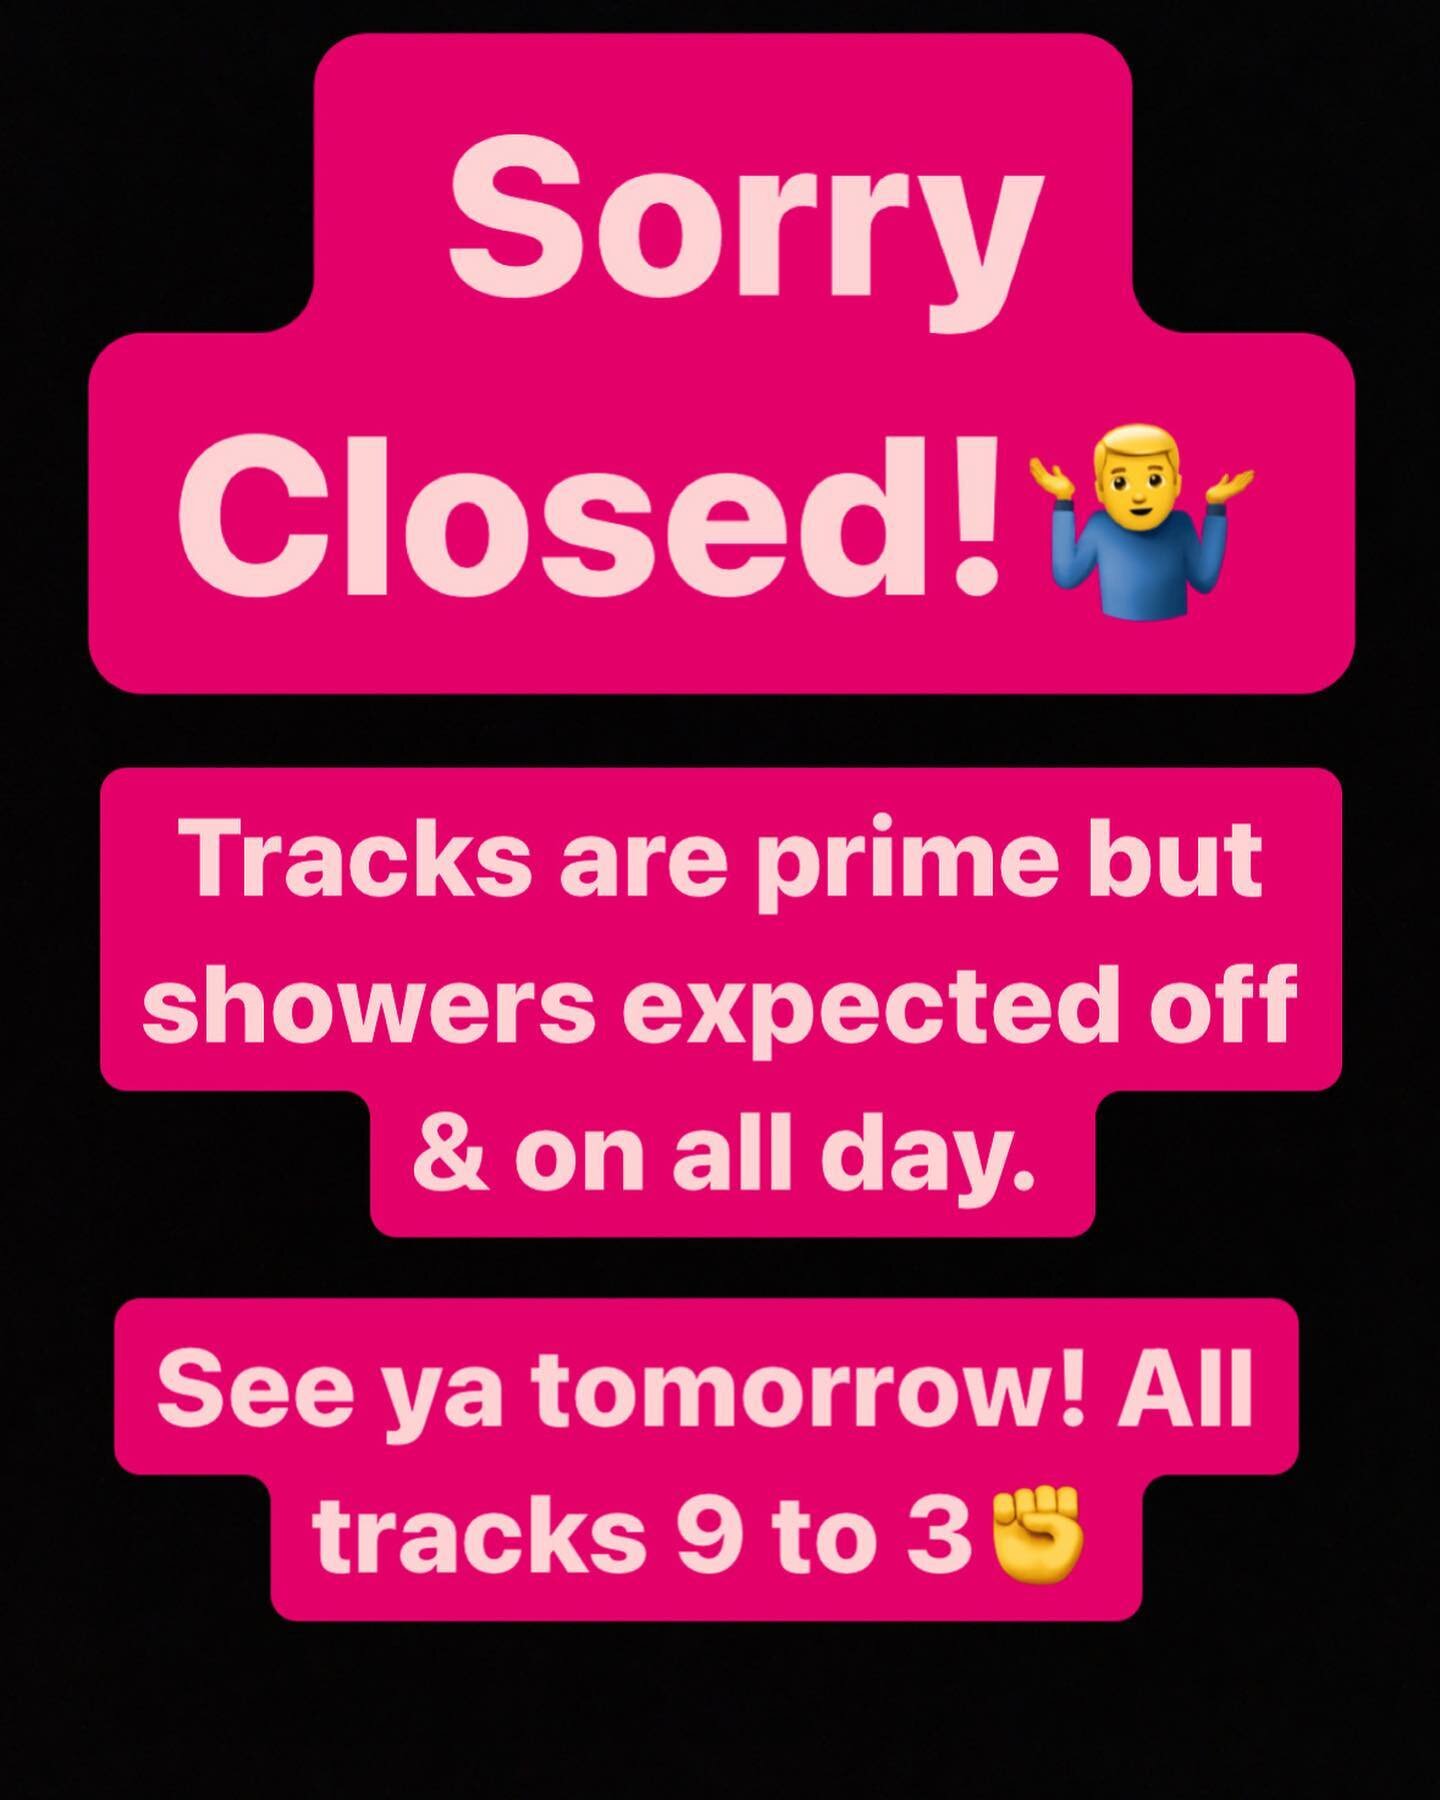 Closed! 
See ya tomorrow! All tracks 9 to 3